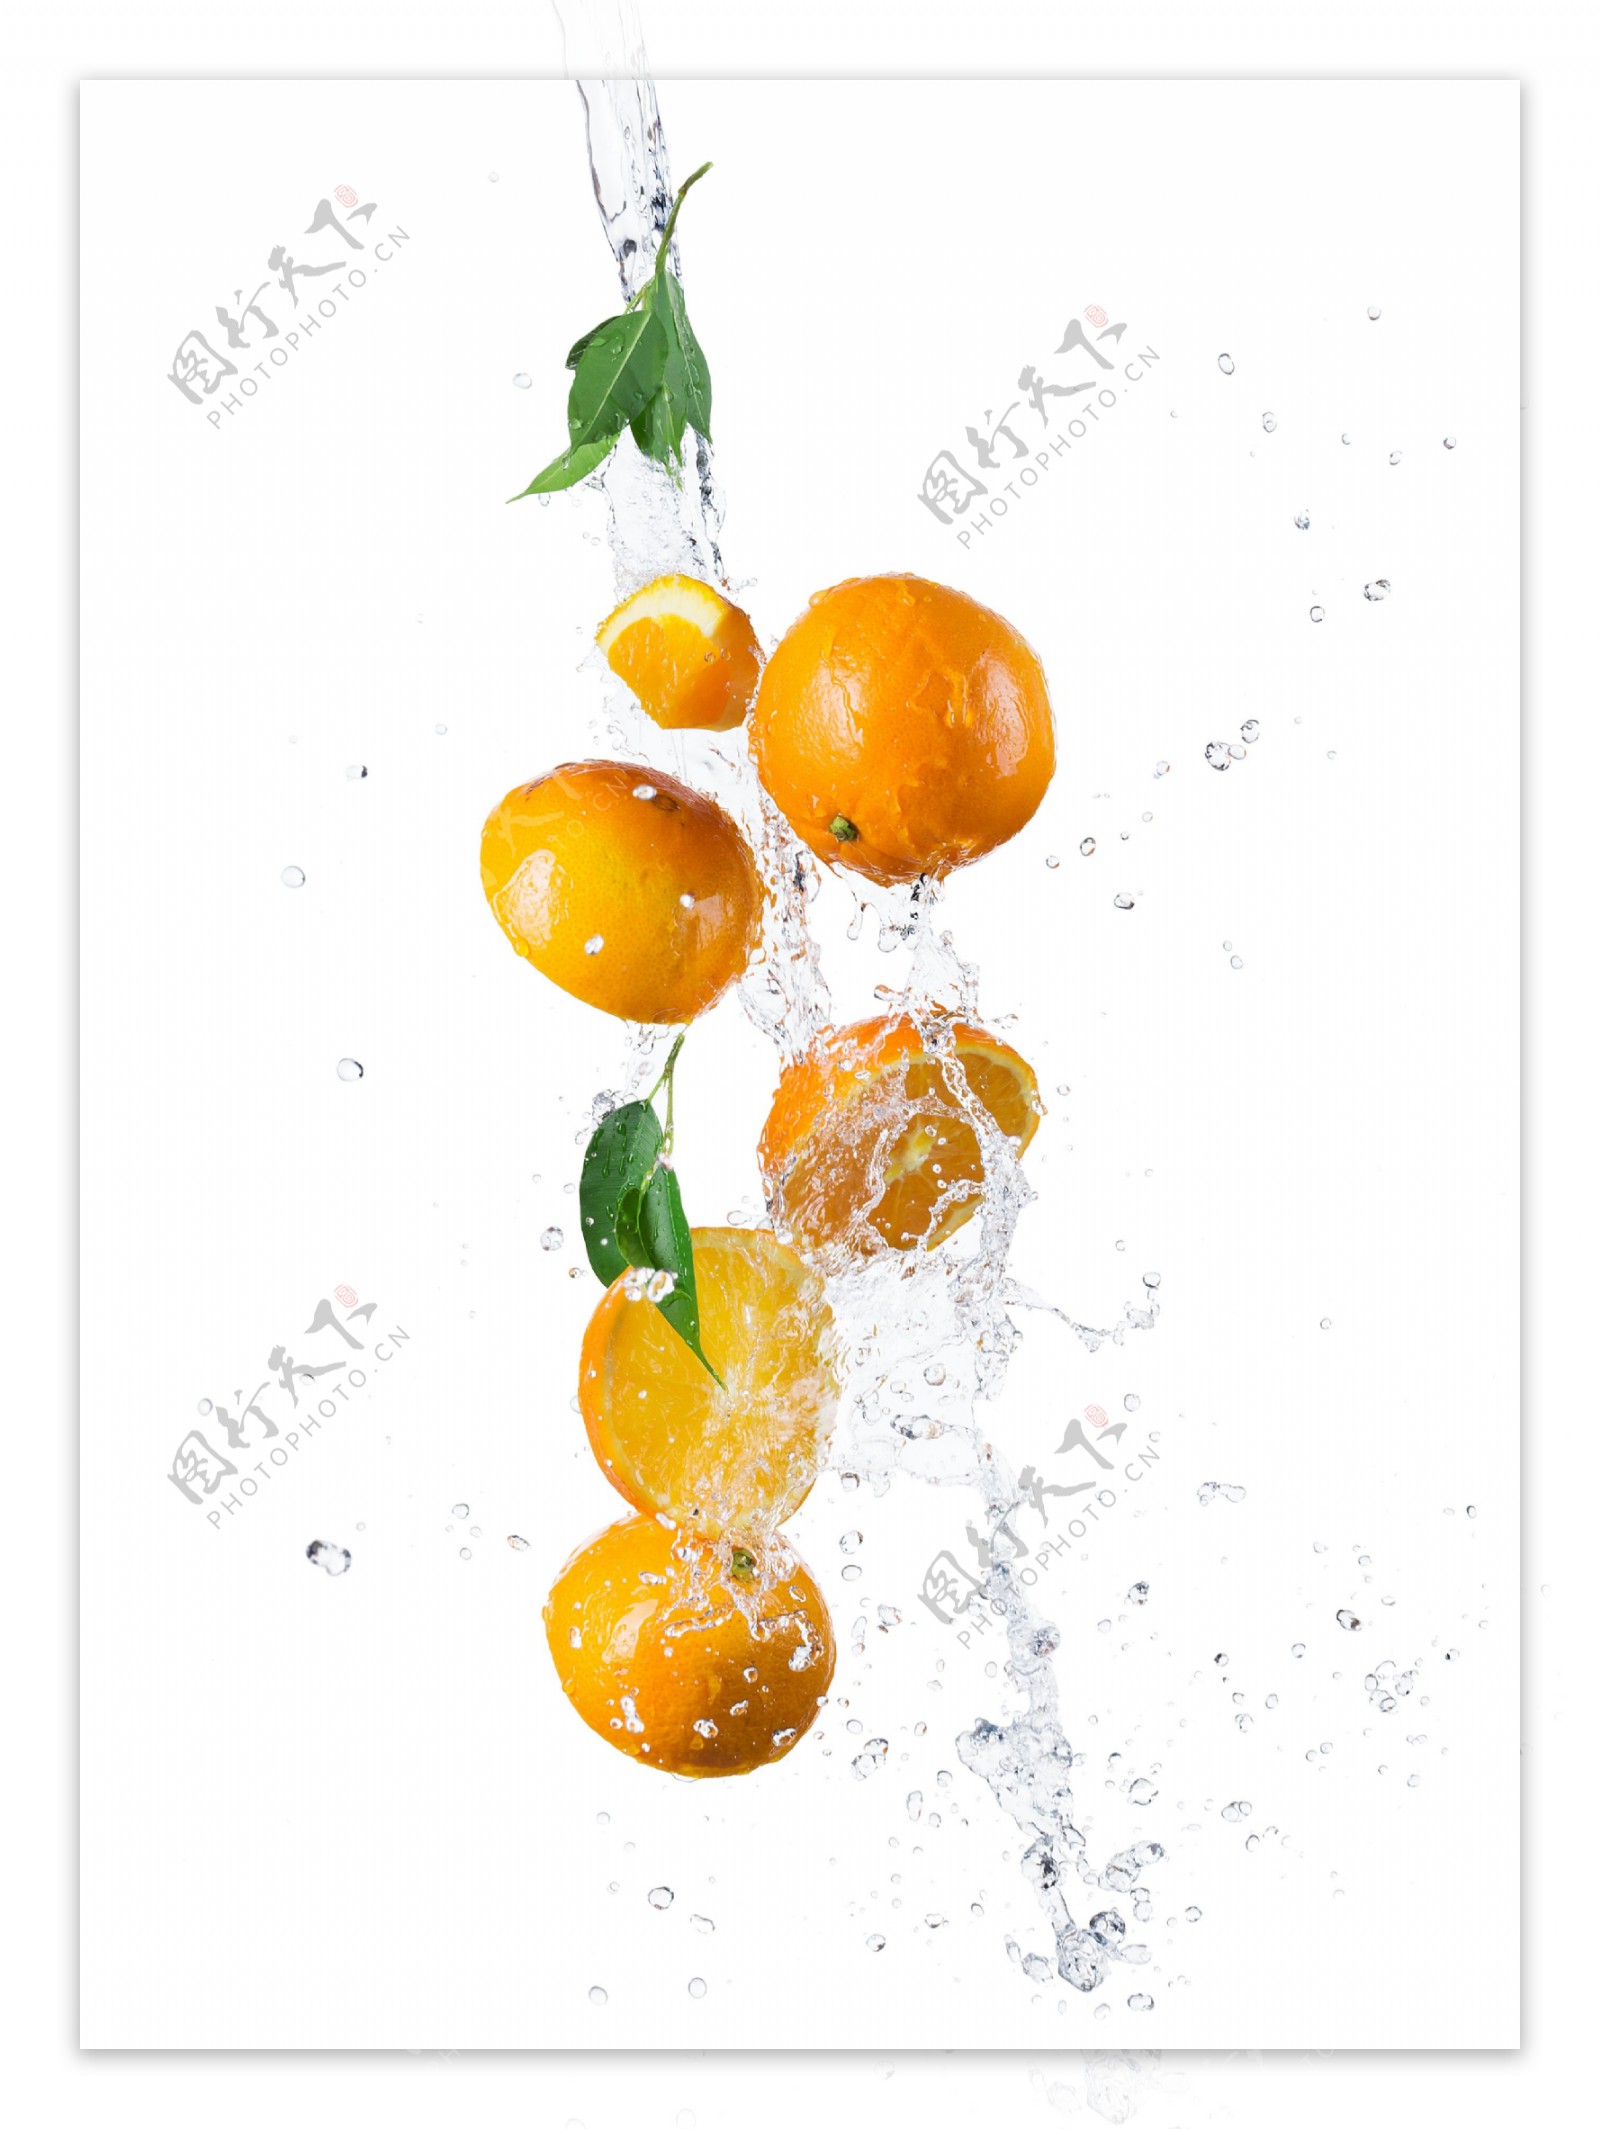 水花和橘子图片